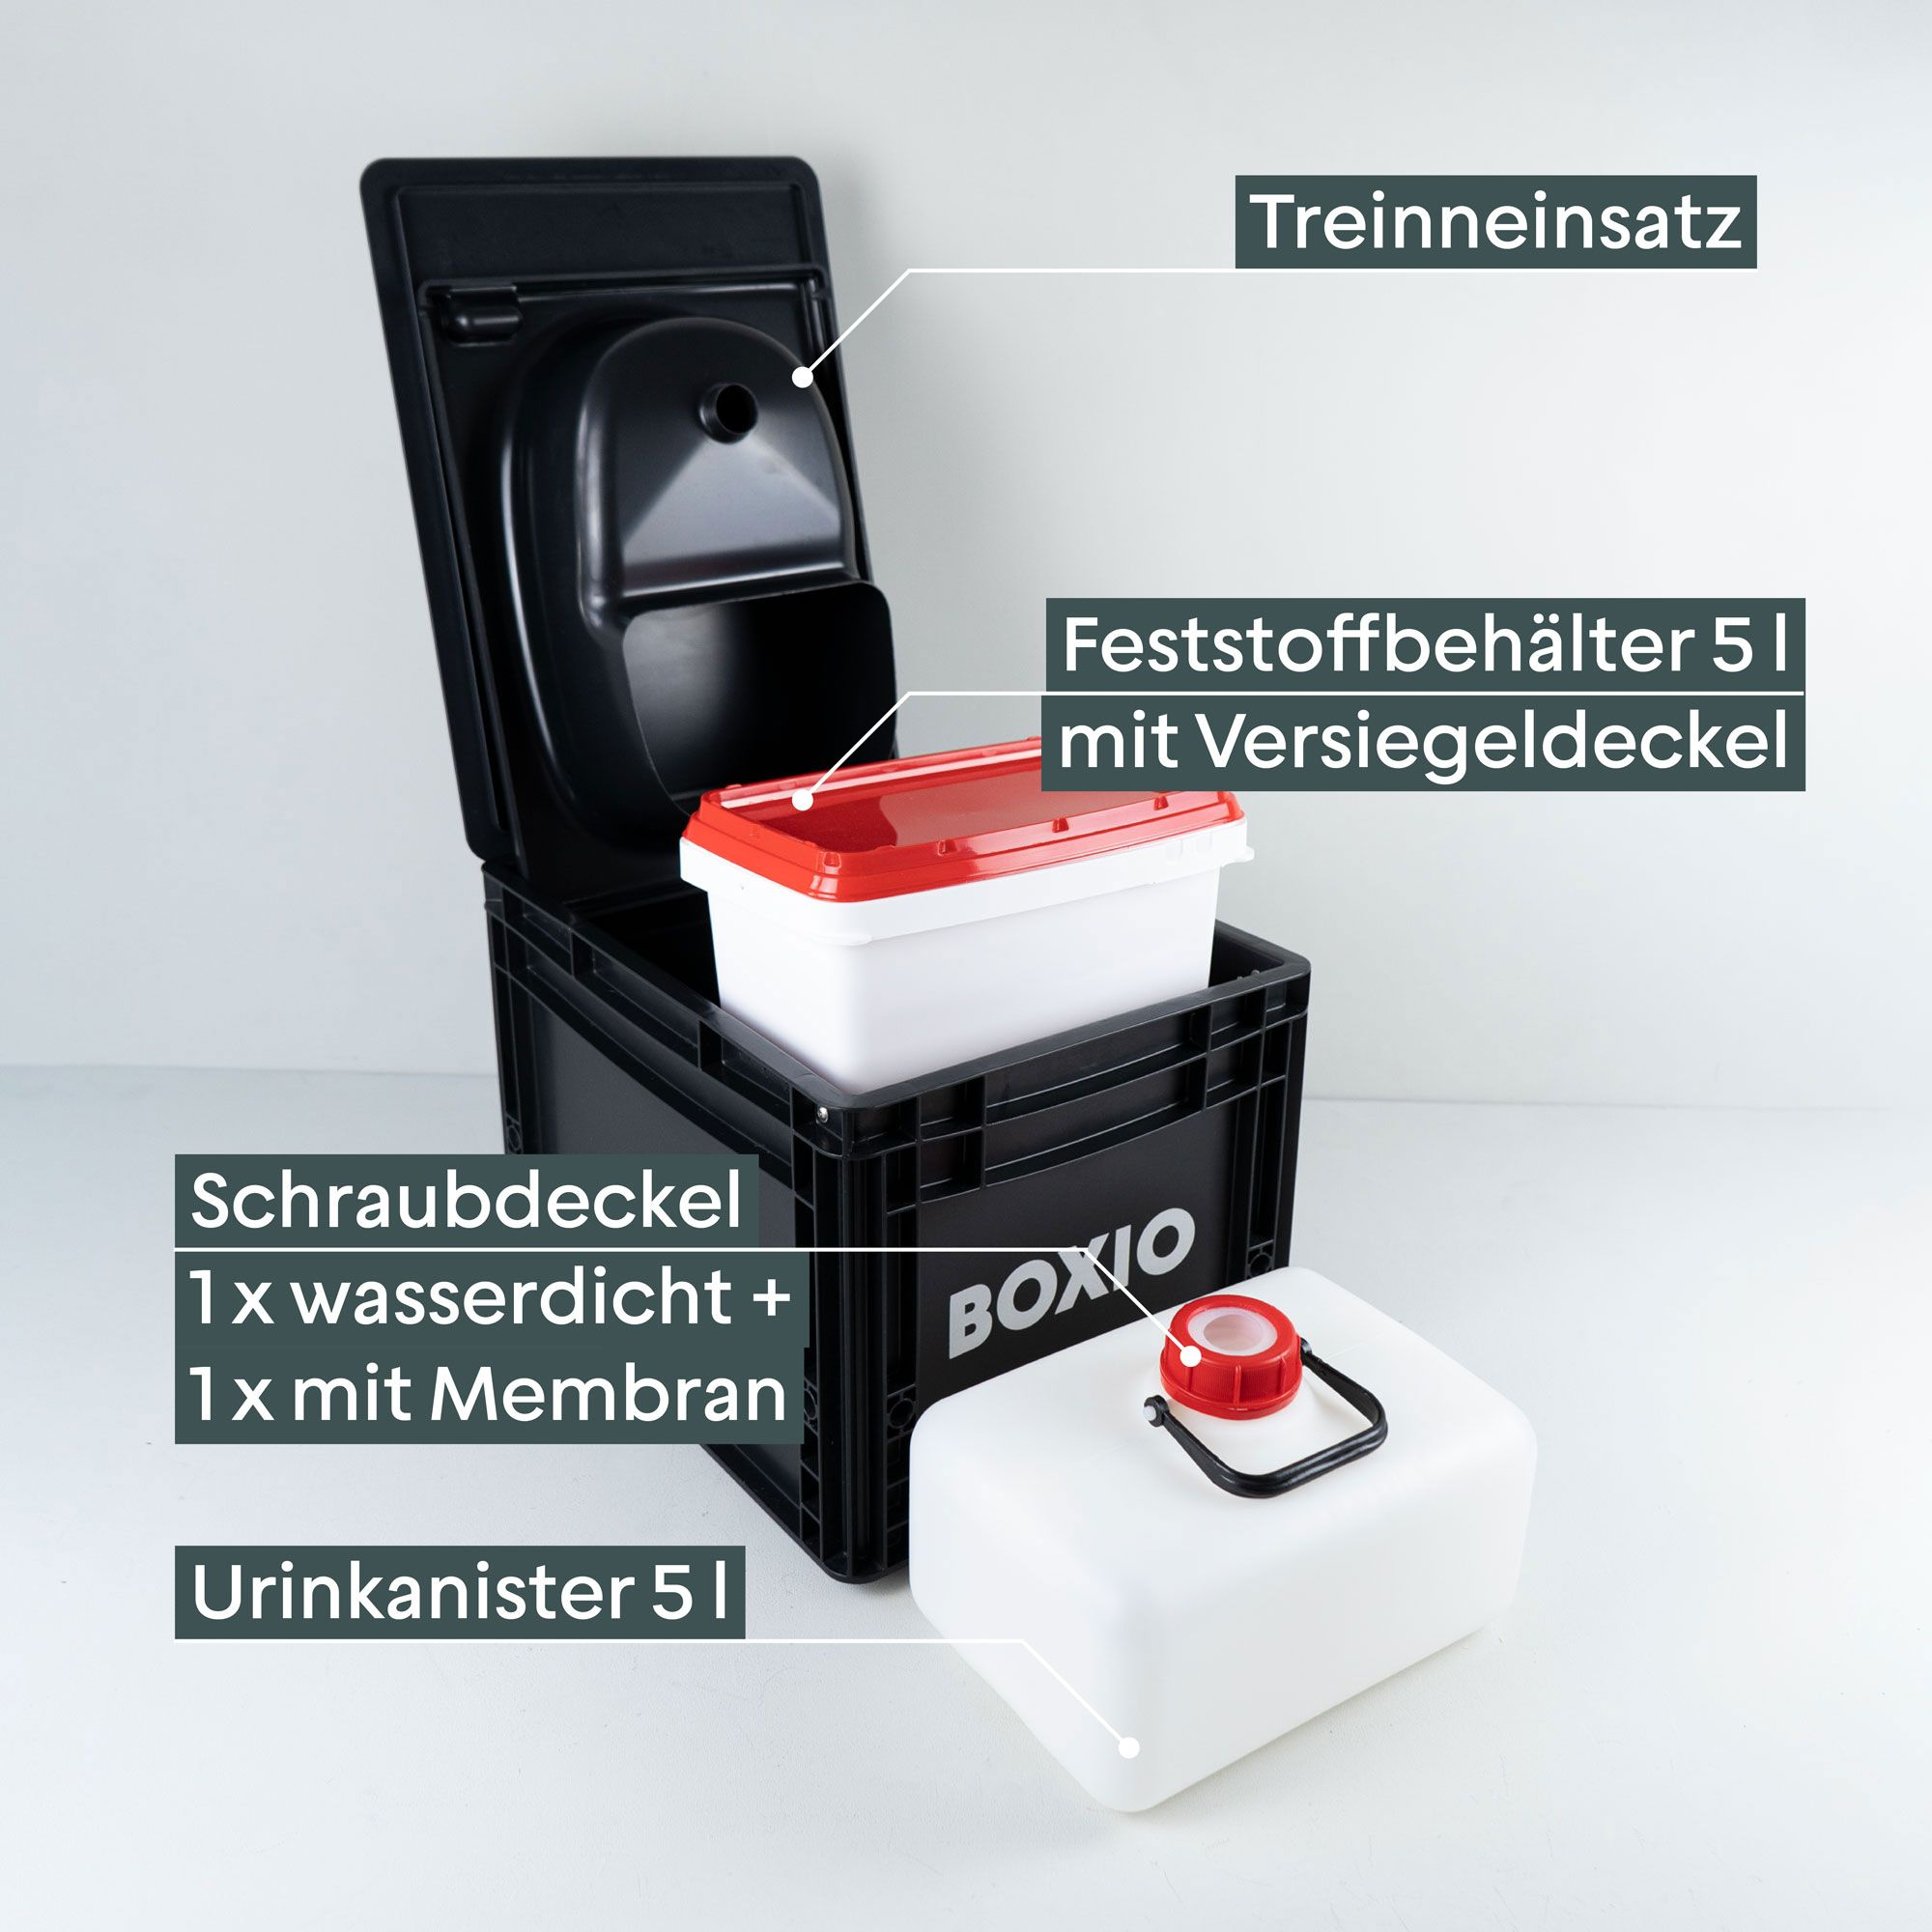 Produktbild der BOXIO-TOILET: Trenneinsatz, Festoffbehälter mit Deckel zum Versiegeln, Urinkanister mit Schraubdeckel und Membran zum Abdichten